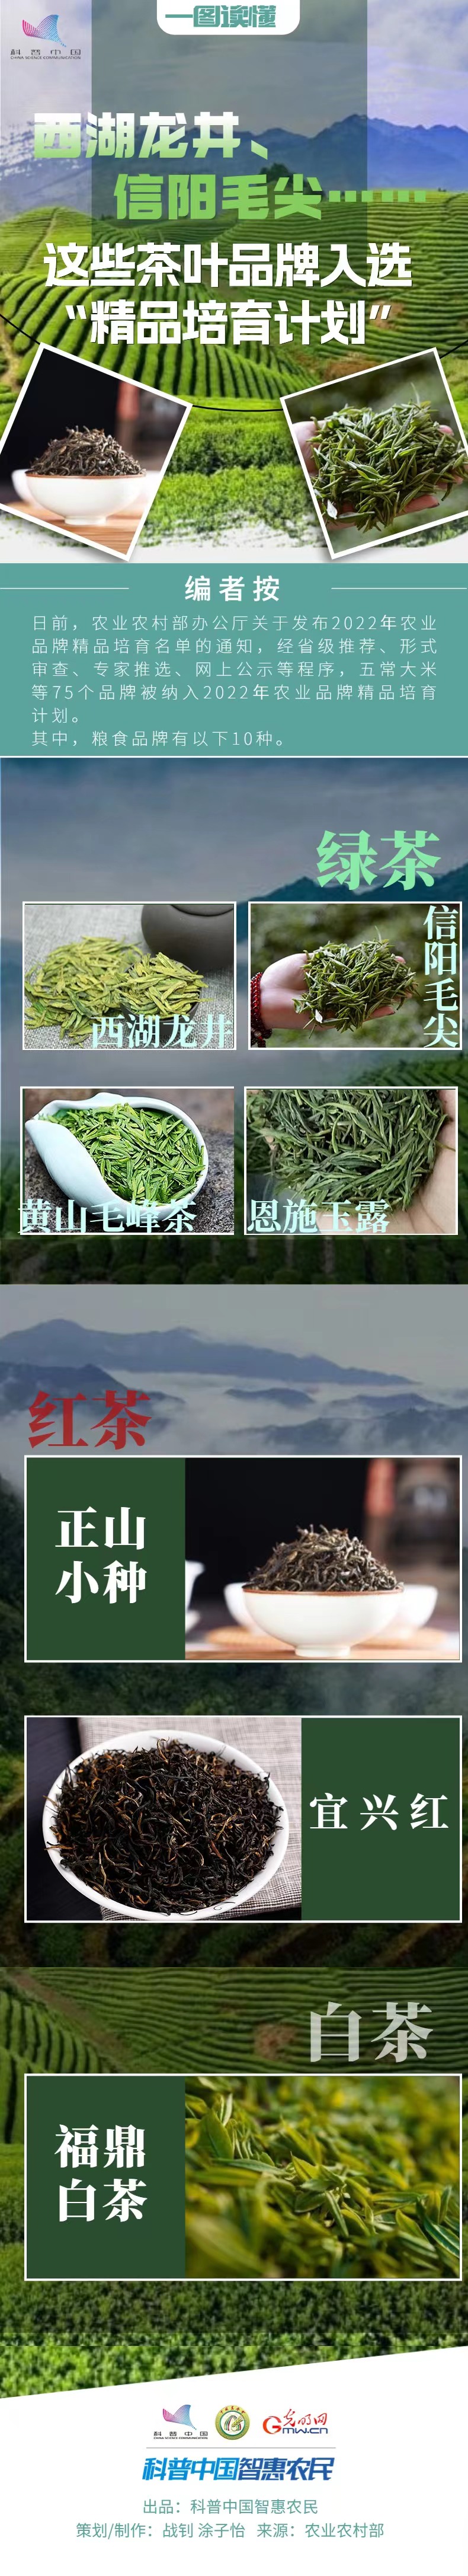 【一图读懂】西湖龙井、信阳毛尖……这些茶叶品牌入选“精品培育计划”